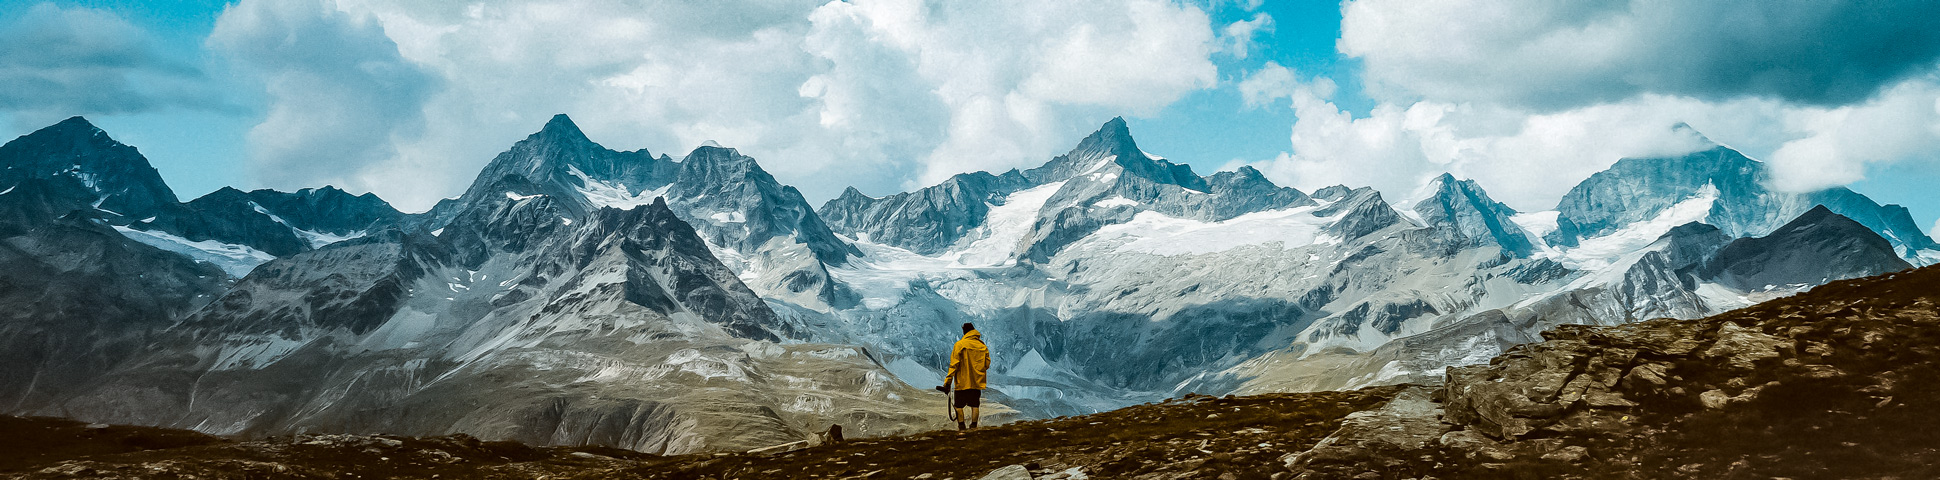 Panoramic view from Haute Route to Zermatt Highlights Trek